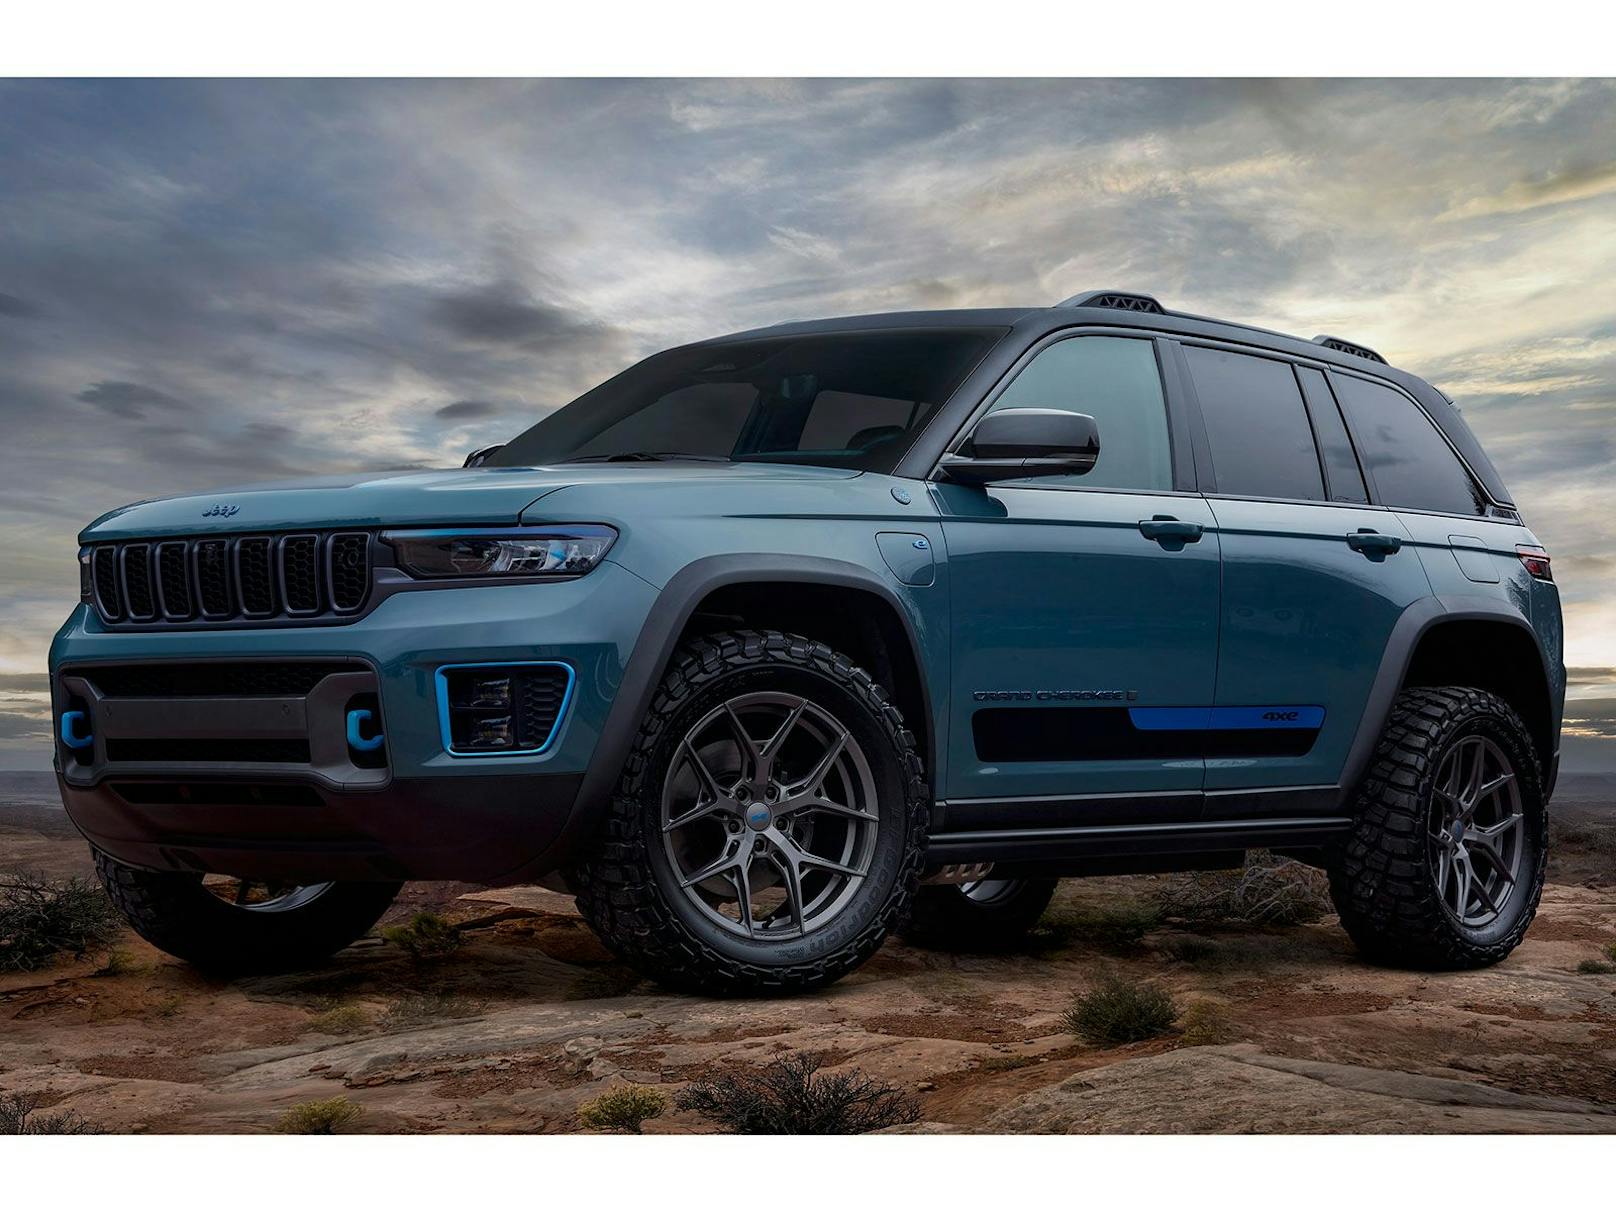 Auch eine Version des neuen Jeep Grand Cherokee ist als Concept Car am Start.